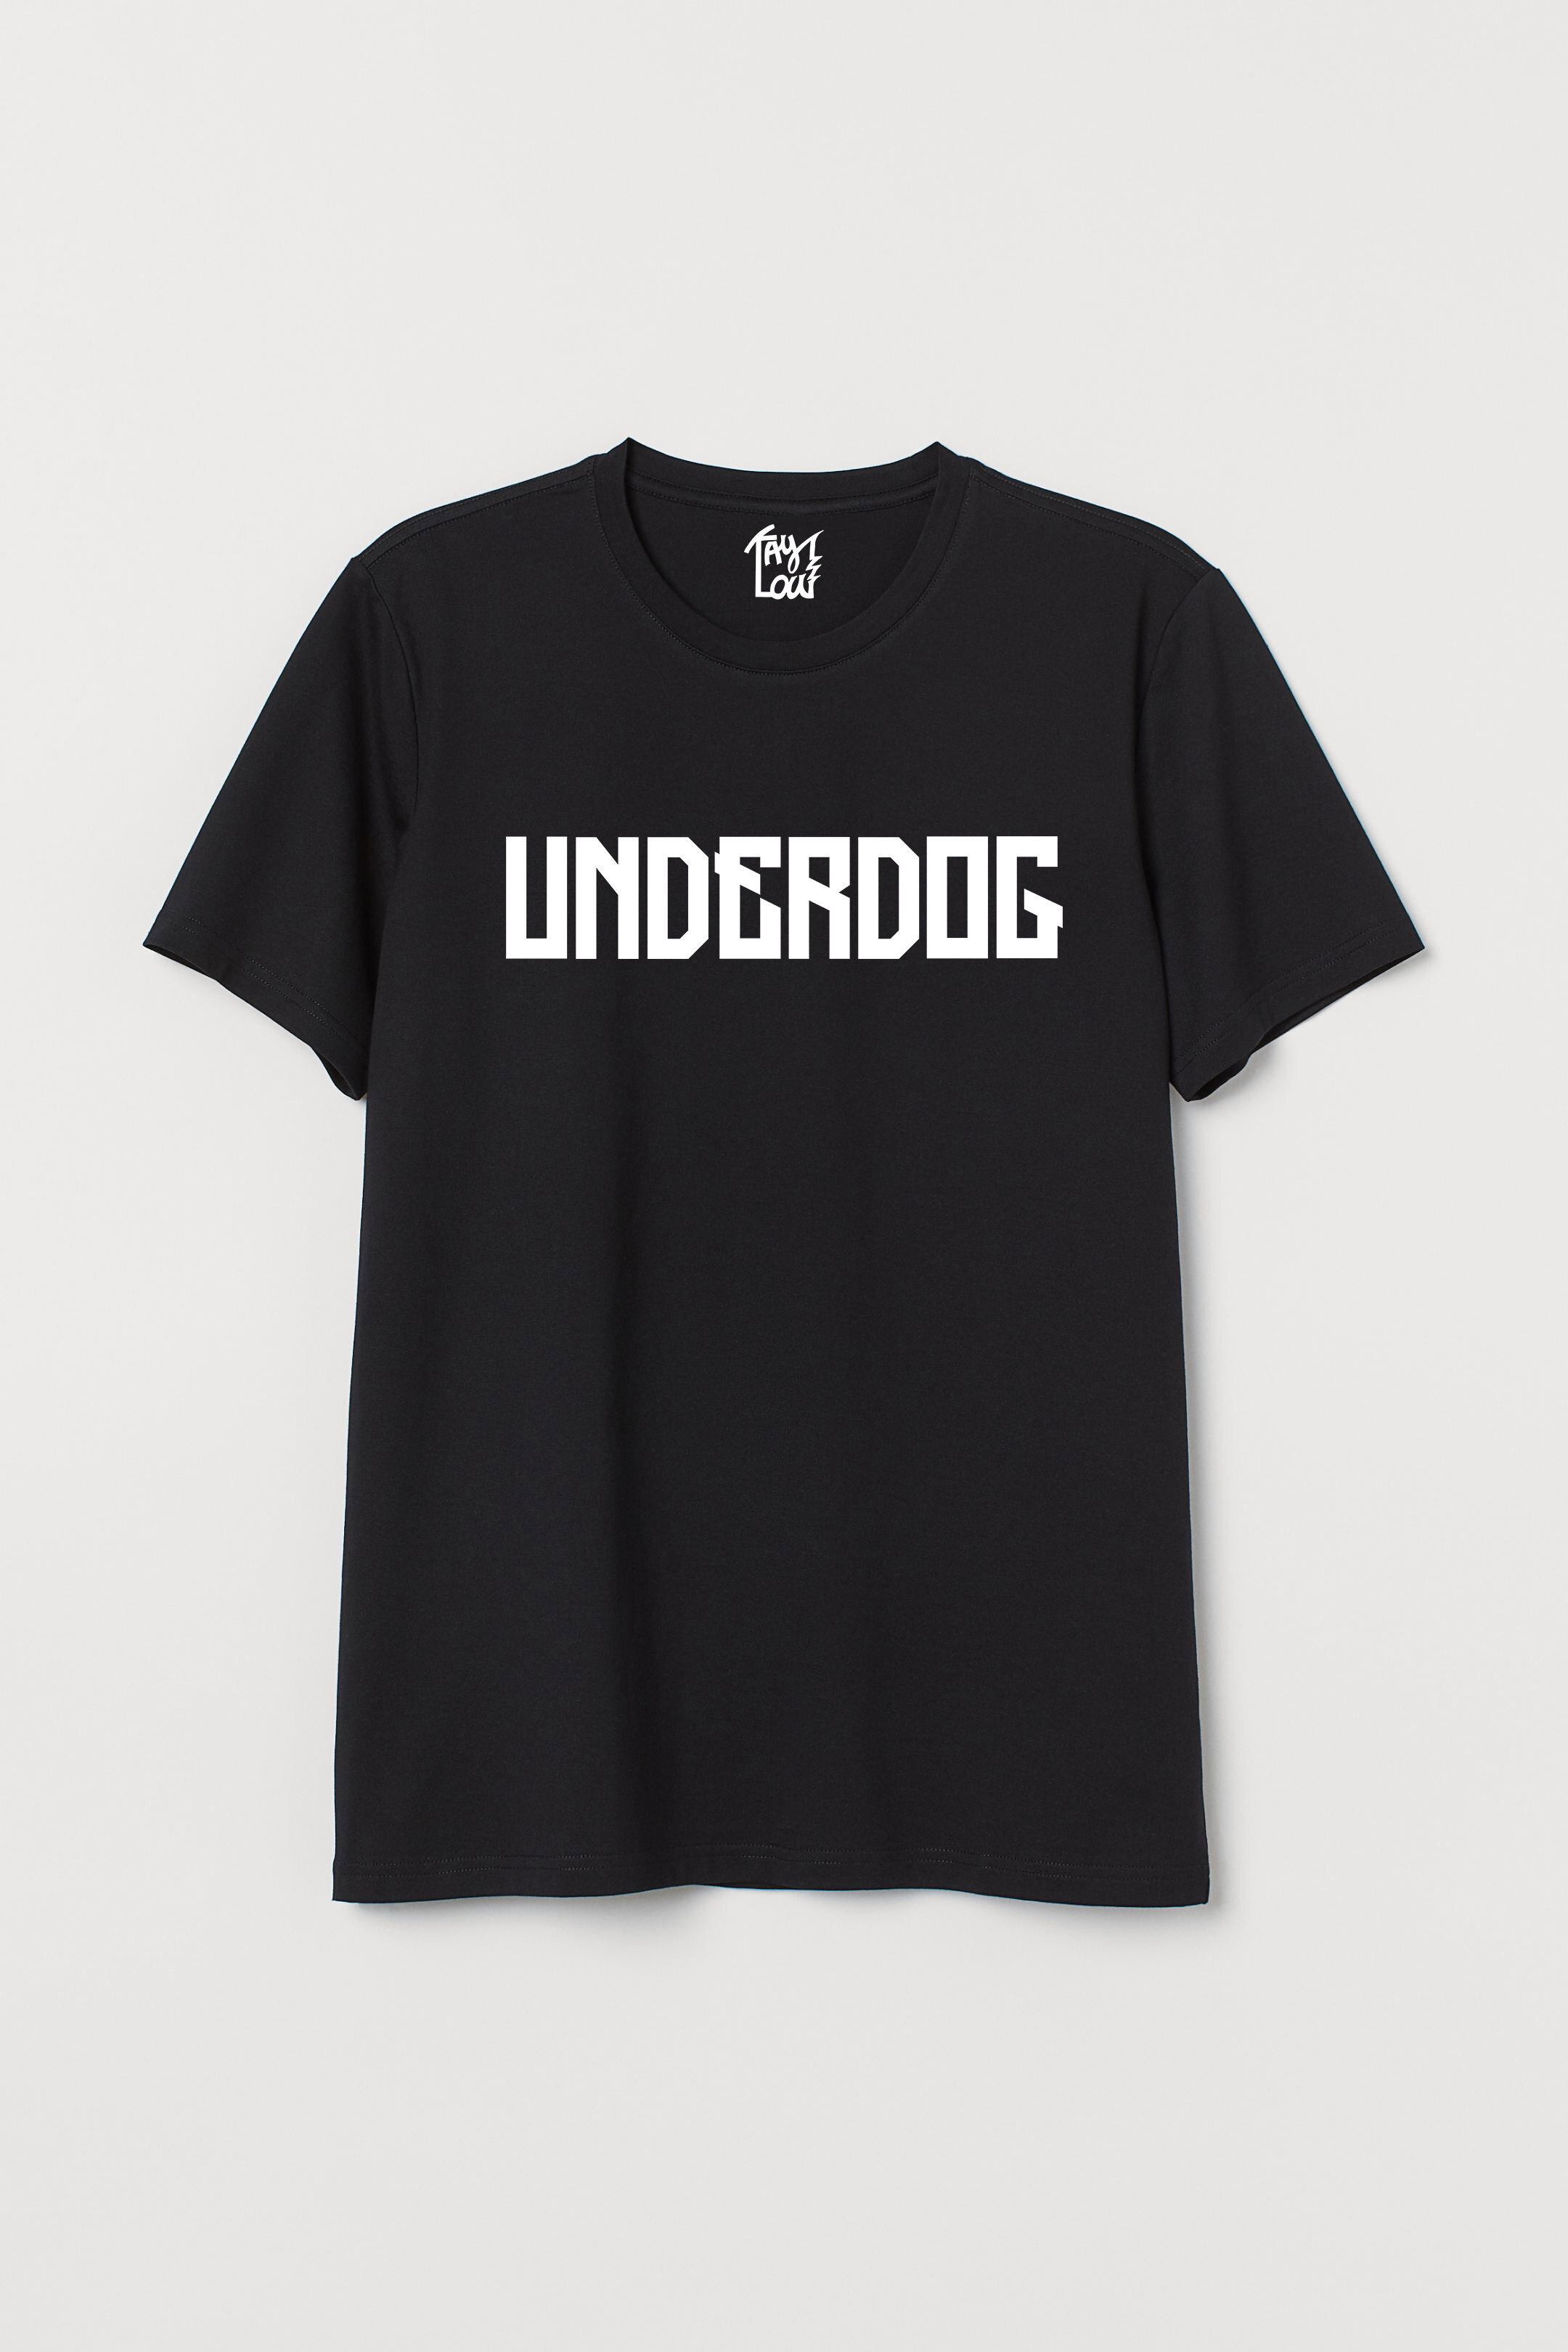 underdog tee shirt